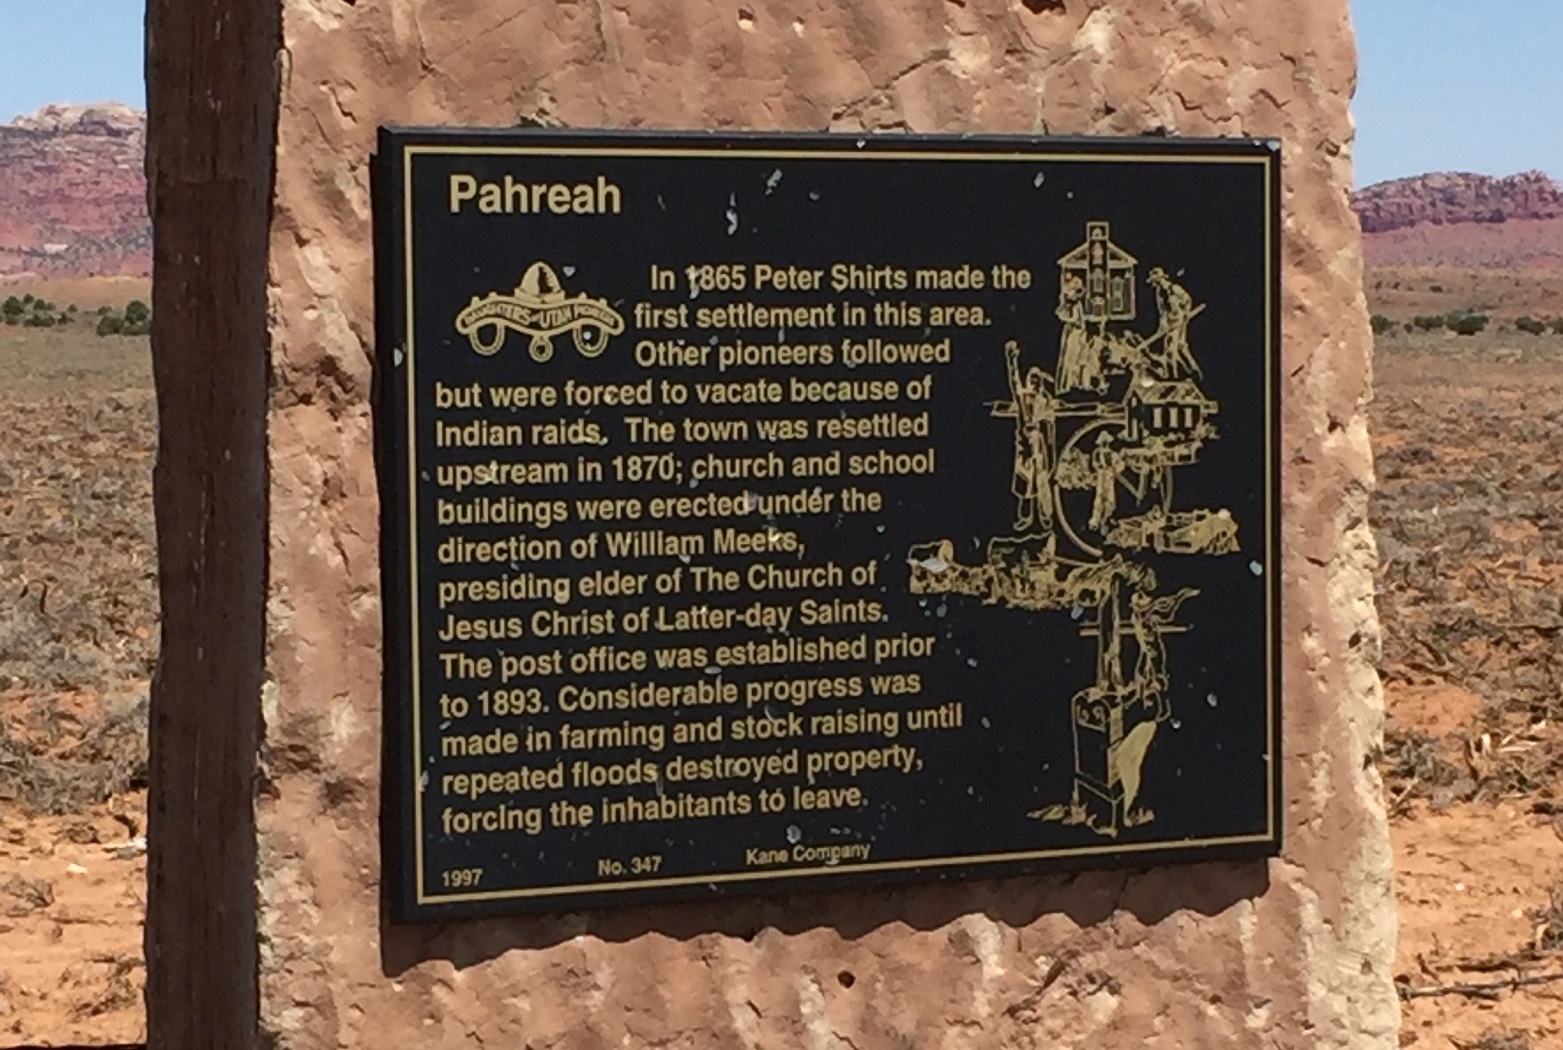 Plaque on the Pahreah town monument